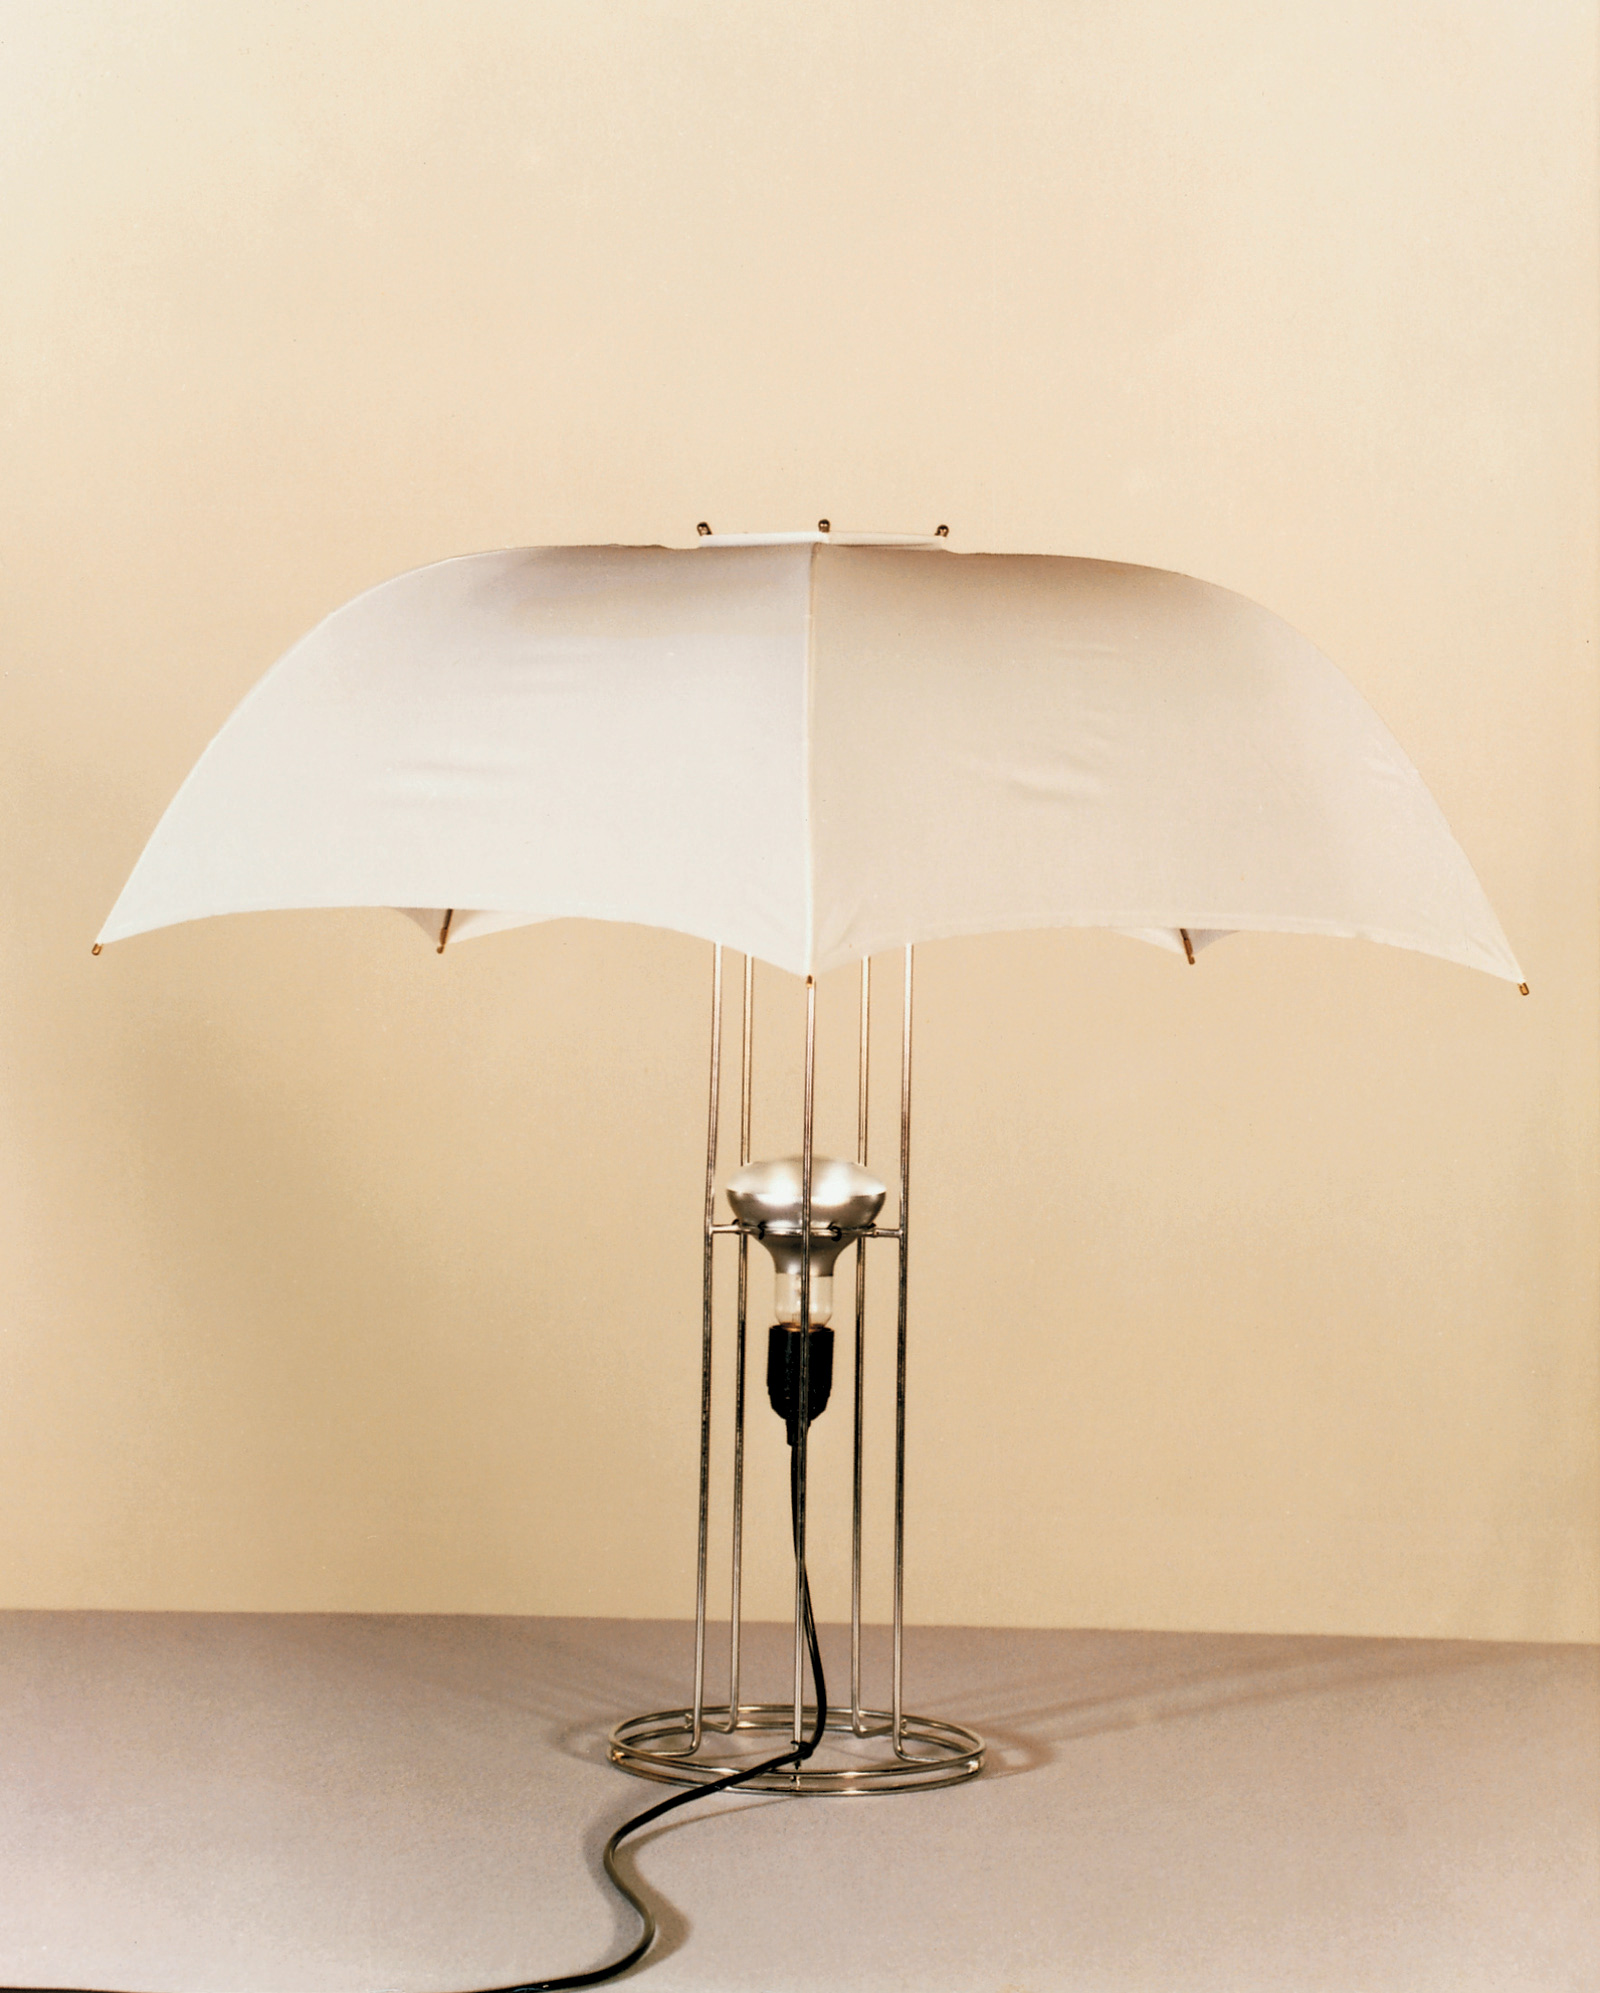 Umbrella lamp